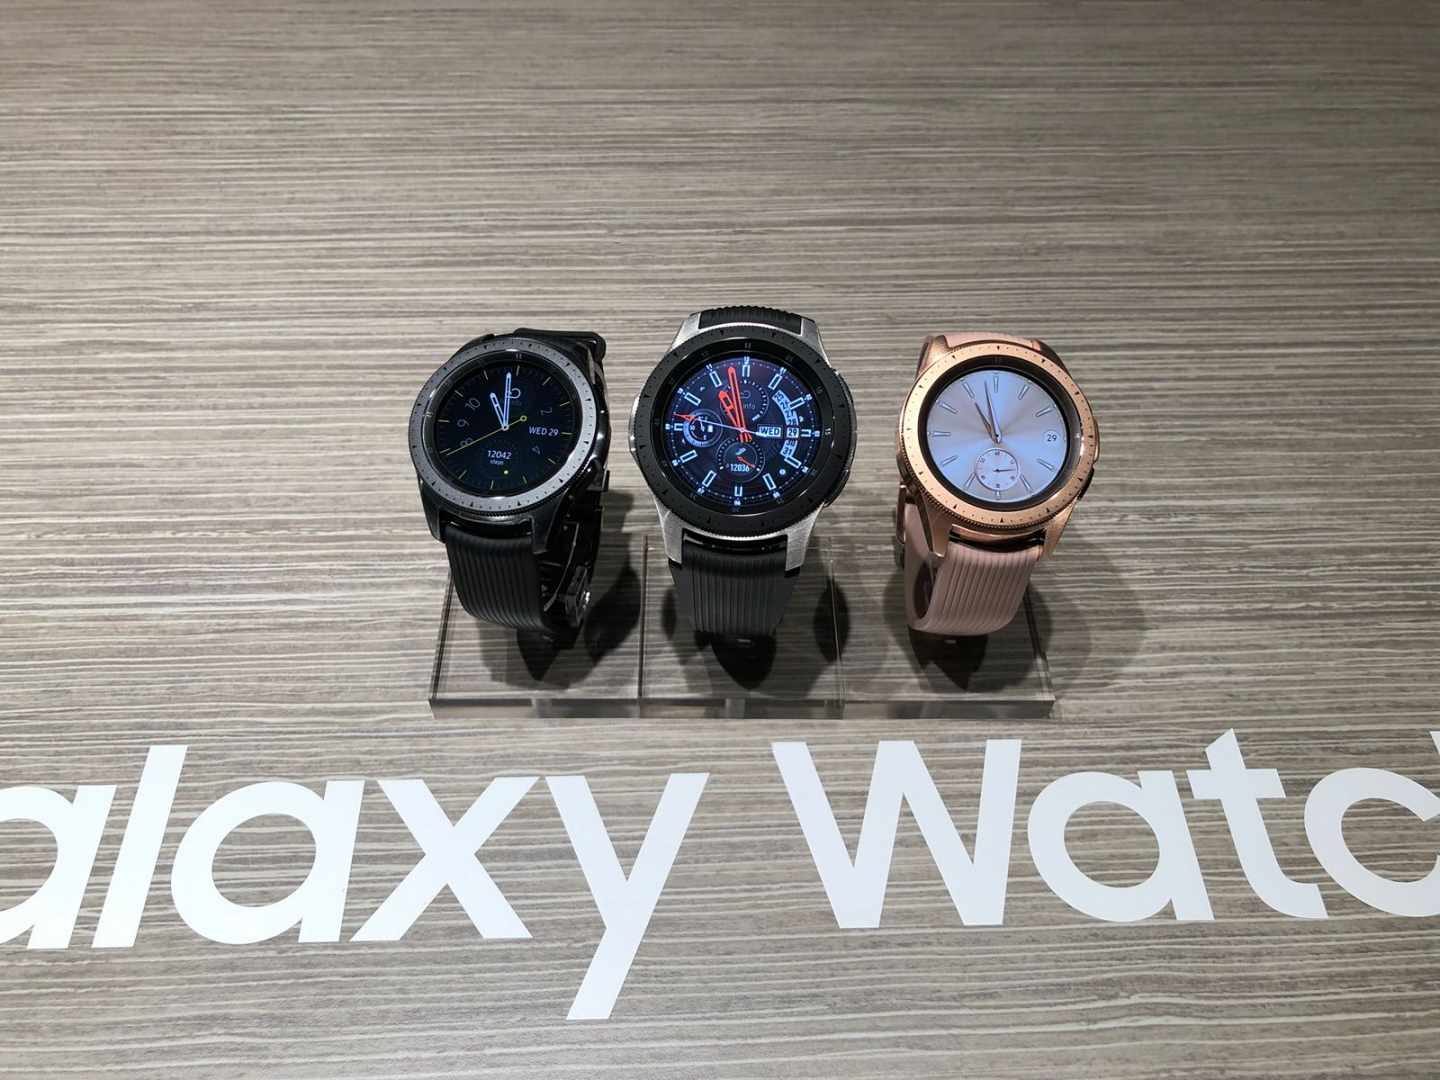 Modelos de Samsung Watch.